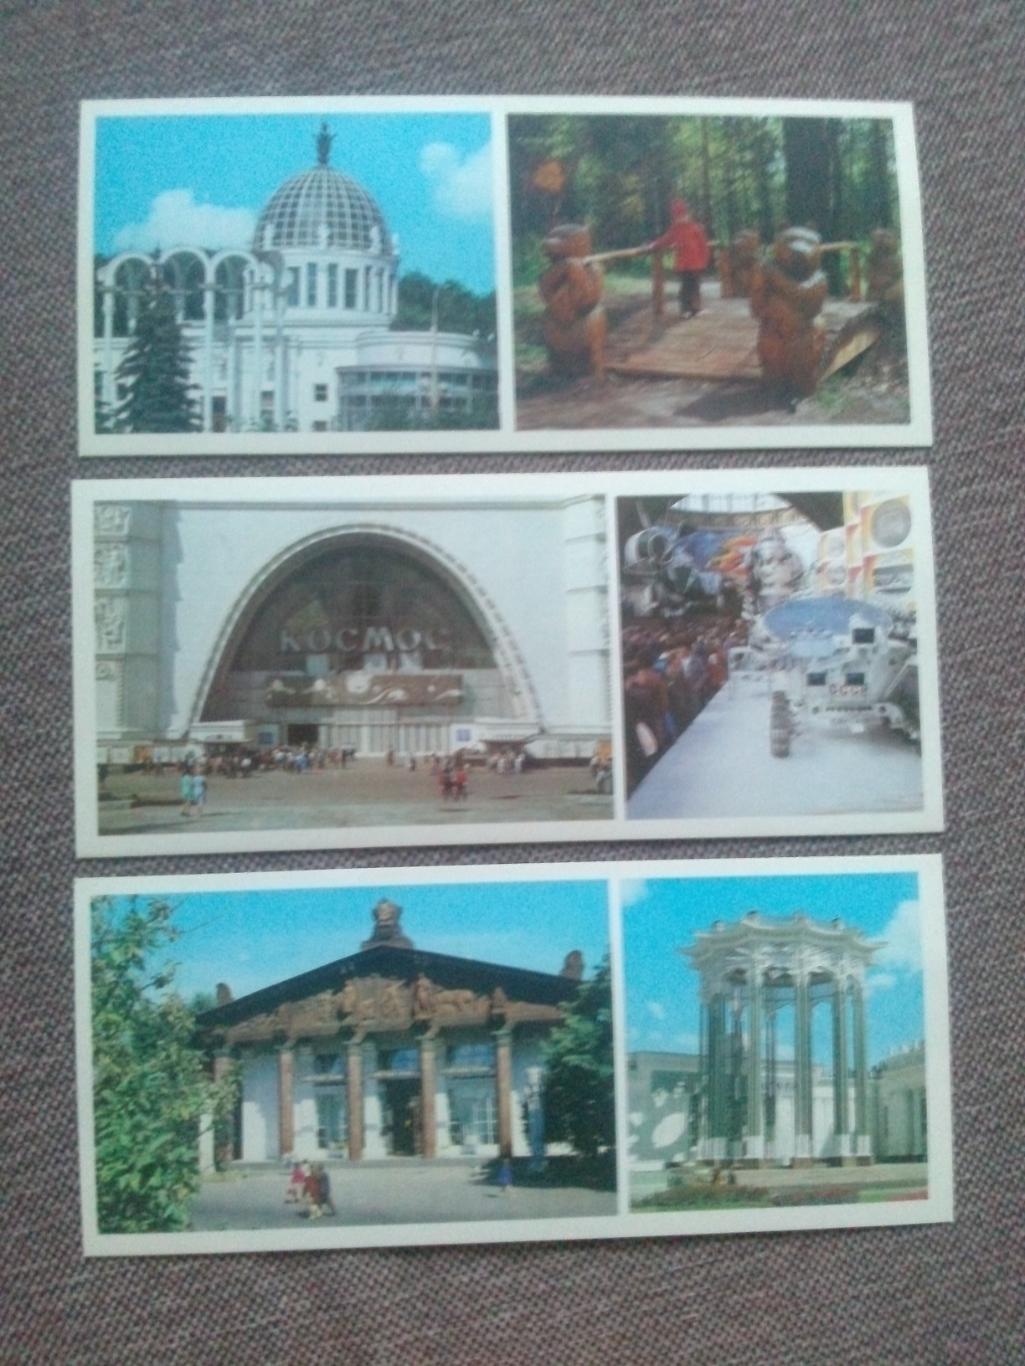 Памятные места СССР : ВДНХ СССР 1985 г. полный набор - 15 открыток (Выставка) 5